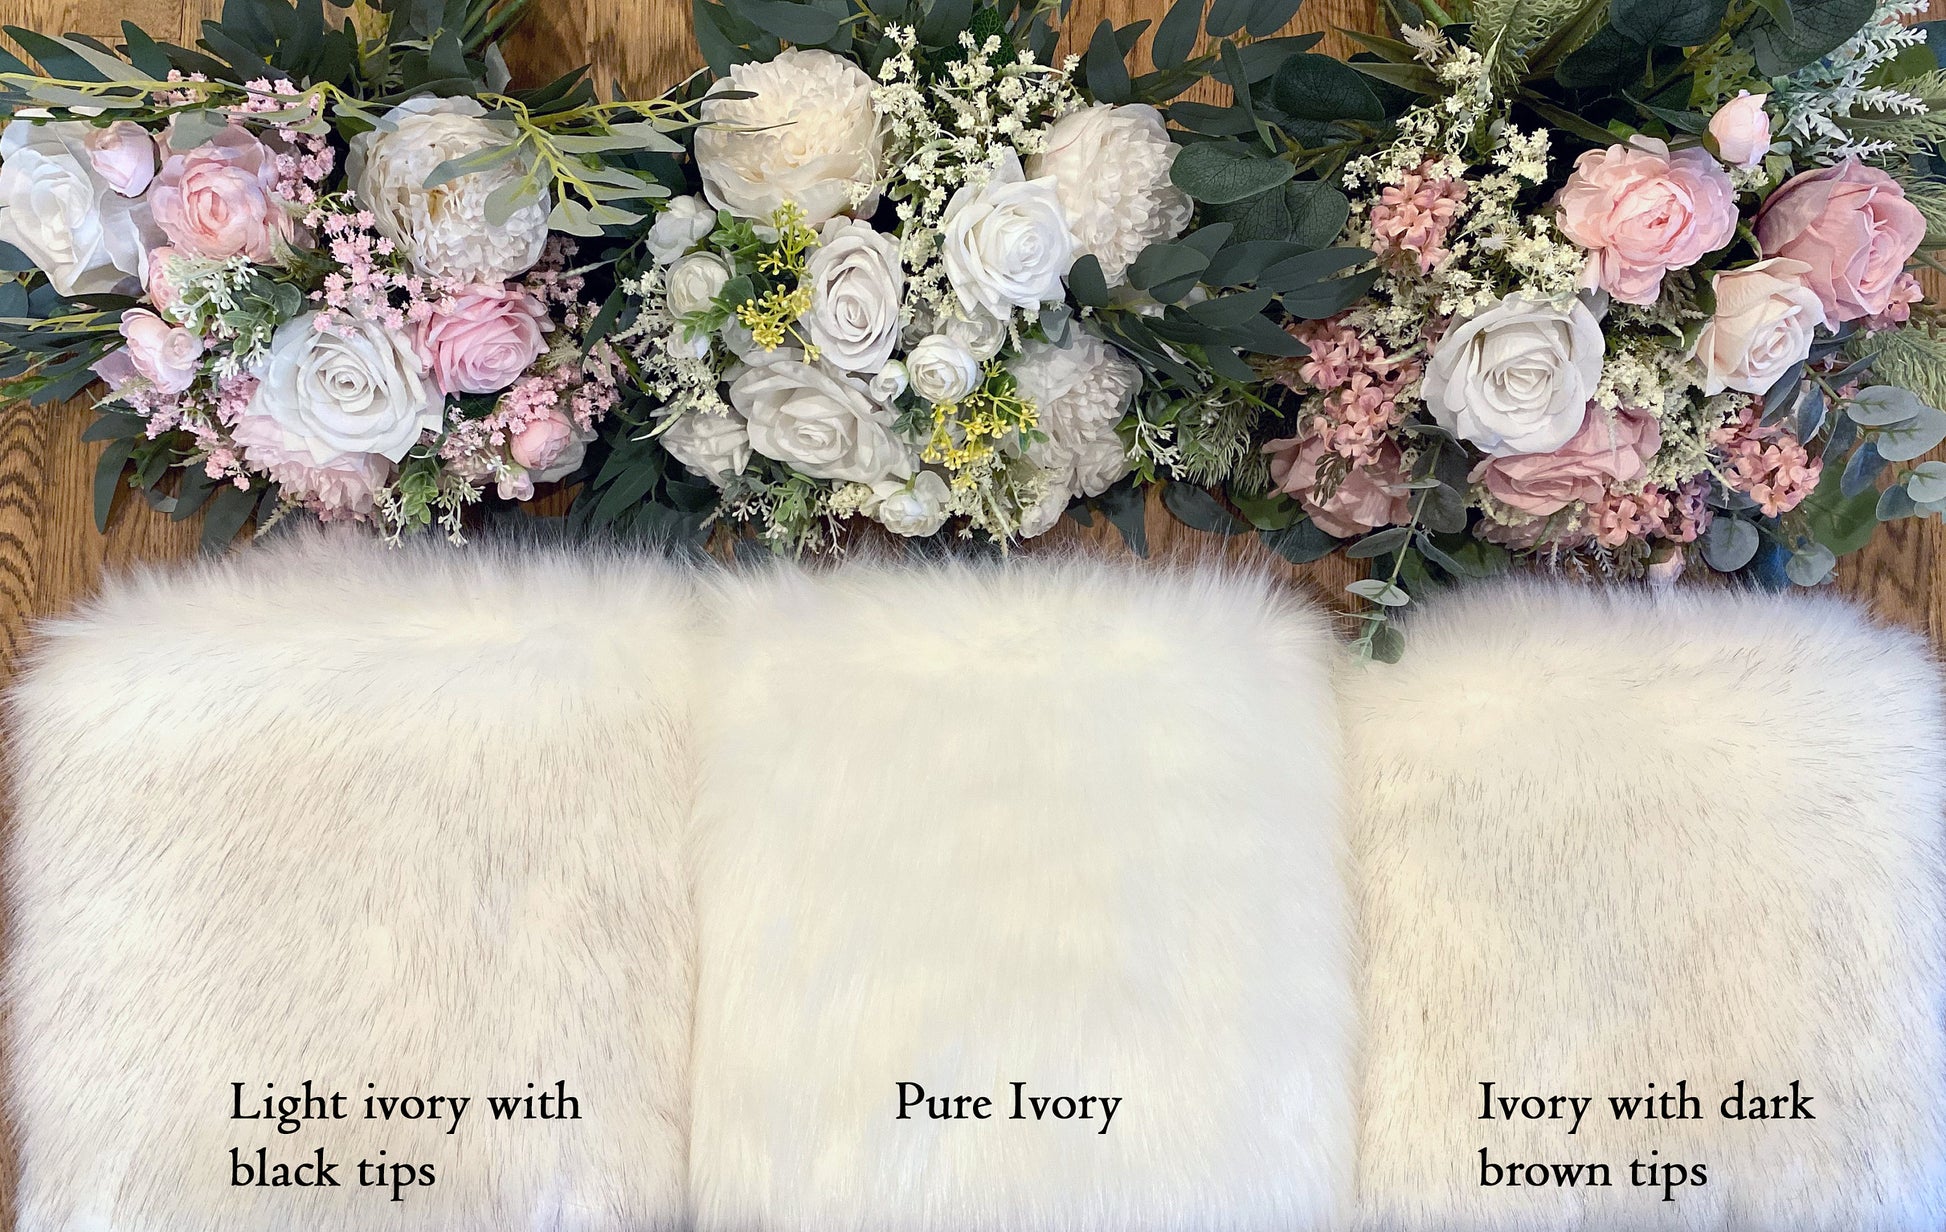 Ivory faux fur wrap faux fur stole faux fur shawl bridal wrap faux fur shrug bridal cape B005